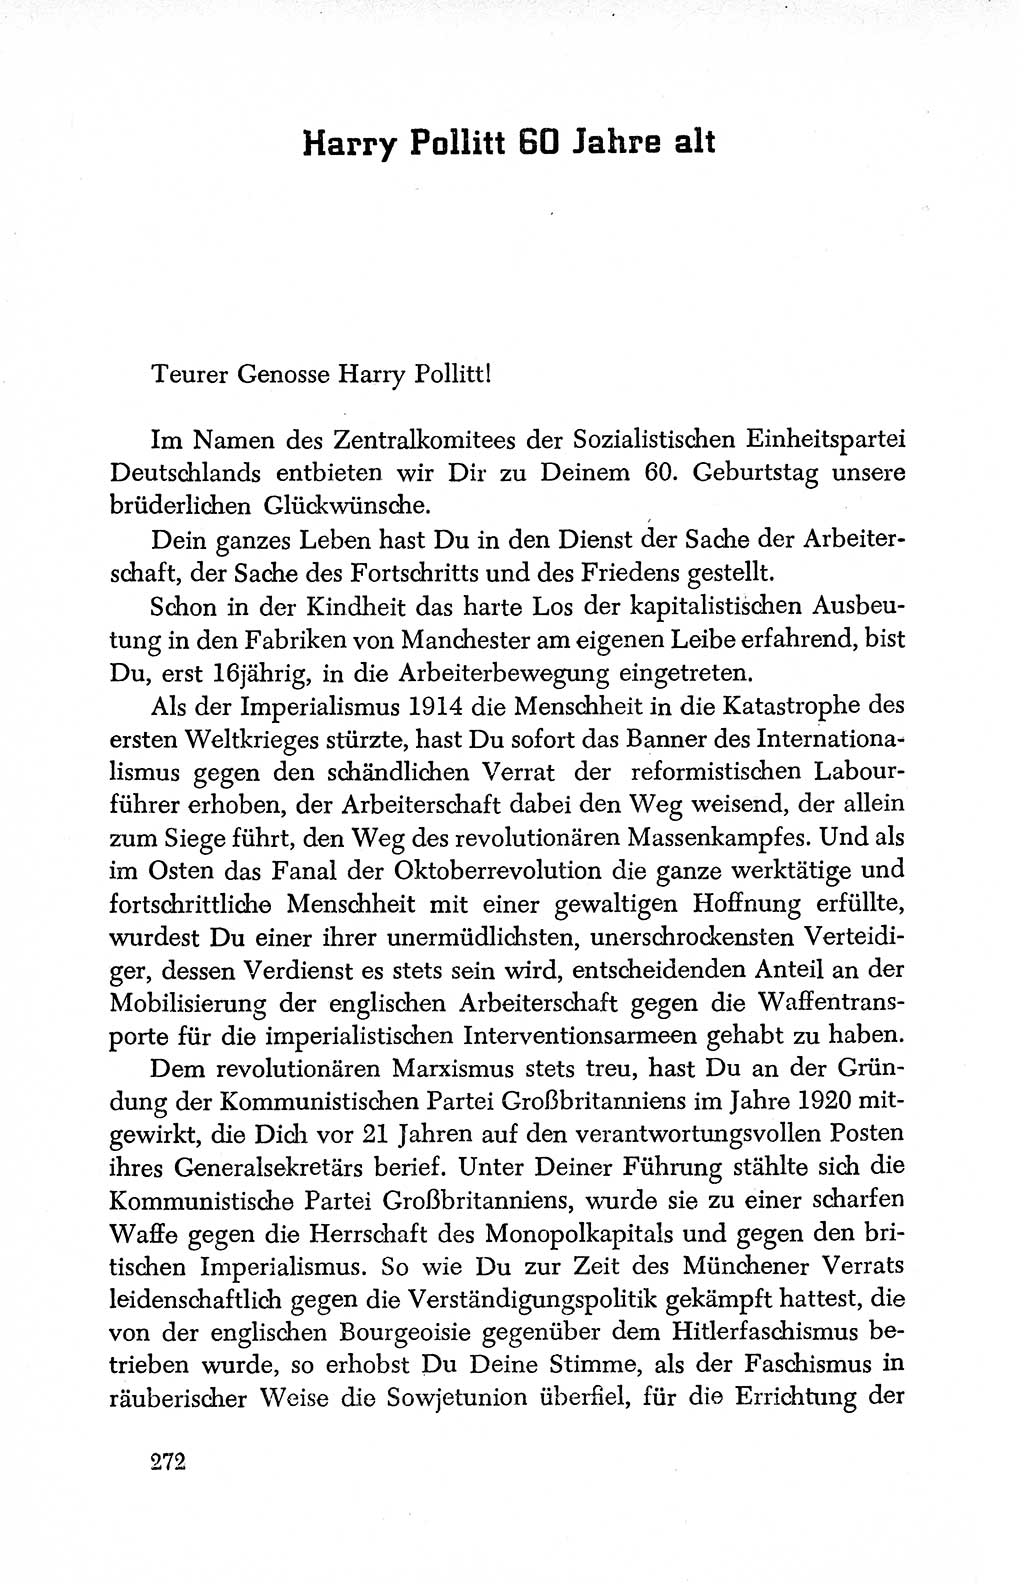 Dokumente der Sozialistischen Einheitspartei Deutschlands (SED) [Deutsche Demokratische Republik (DDR)] 1950-1952, Seite 272 (Dok. SED DDR 1950-1952, S. 272)